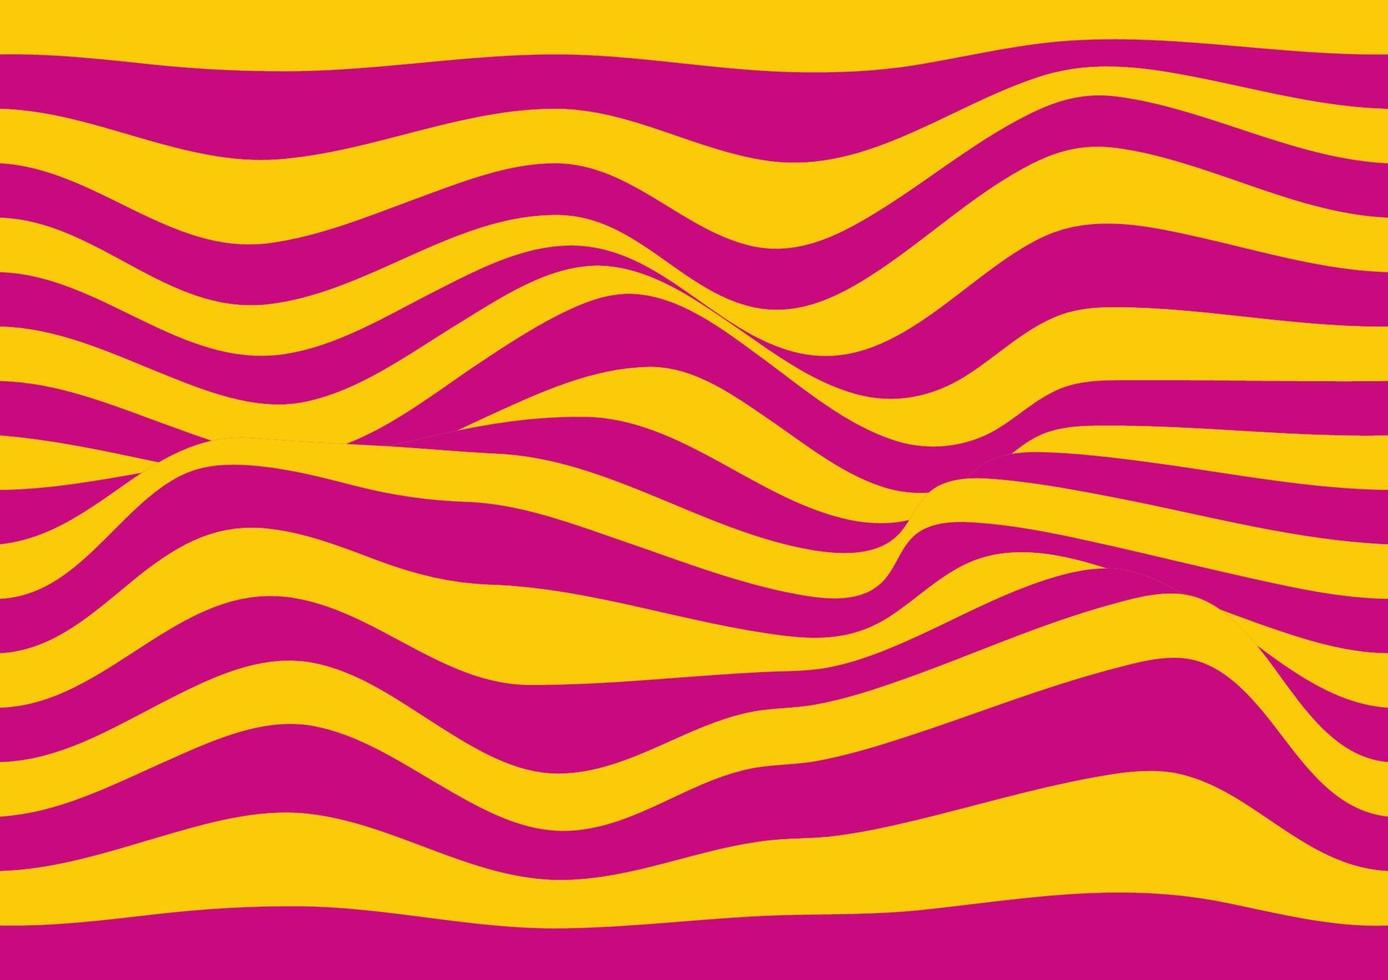 las líneas onduladas distorsionadas resumen la ilustración vectorial de fondo, la curva tiene un patrón de línea recta rosa y naranja. vector